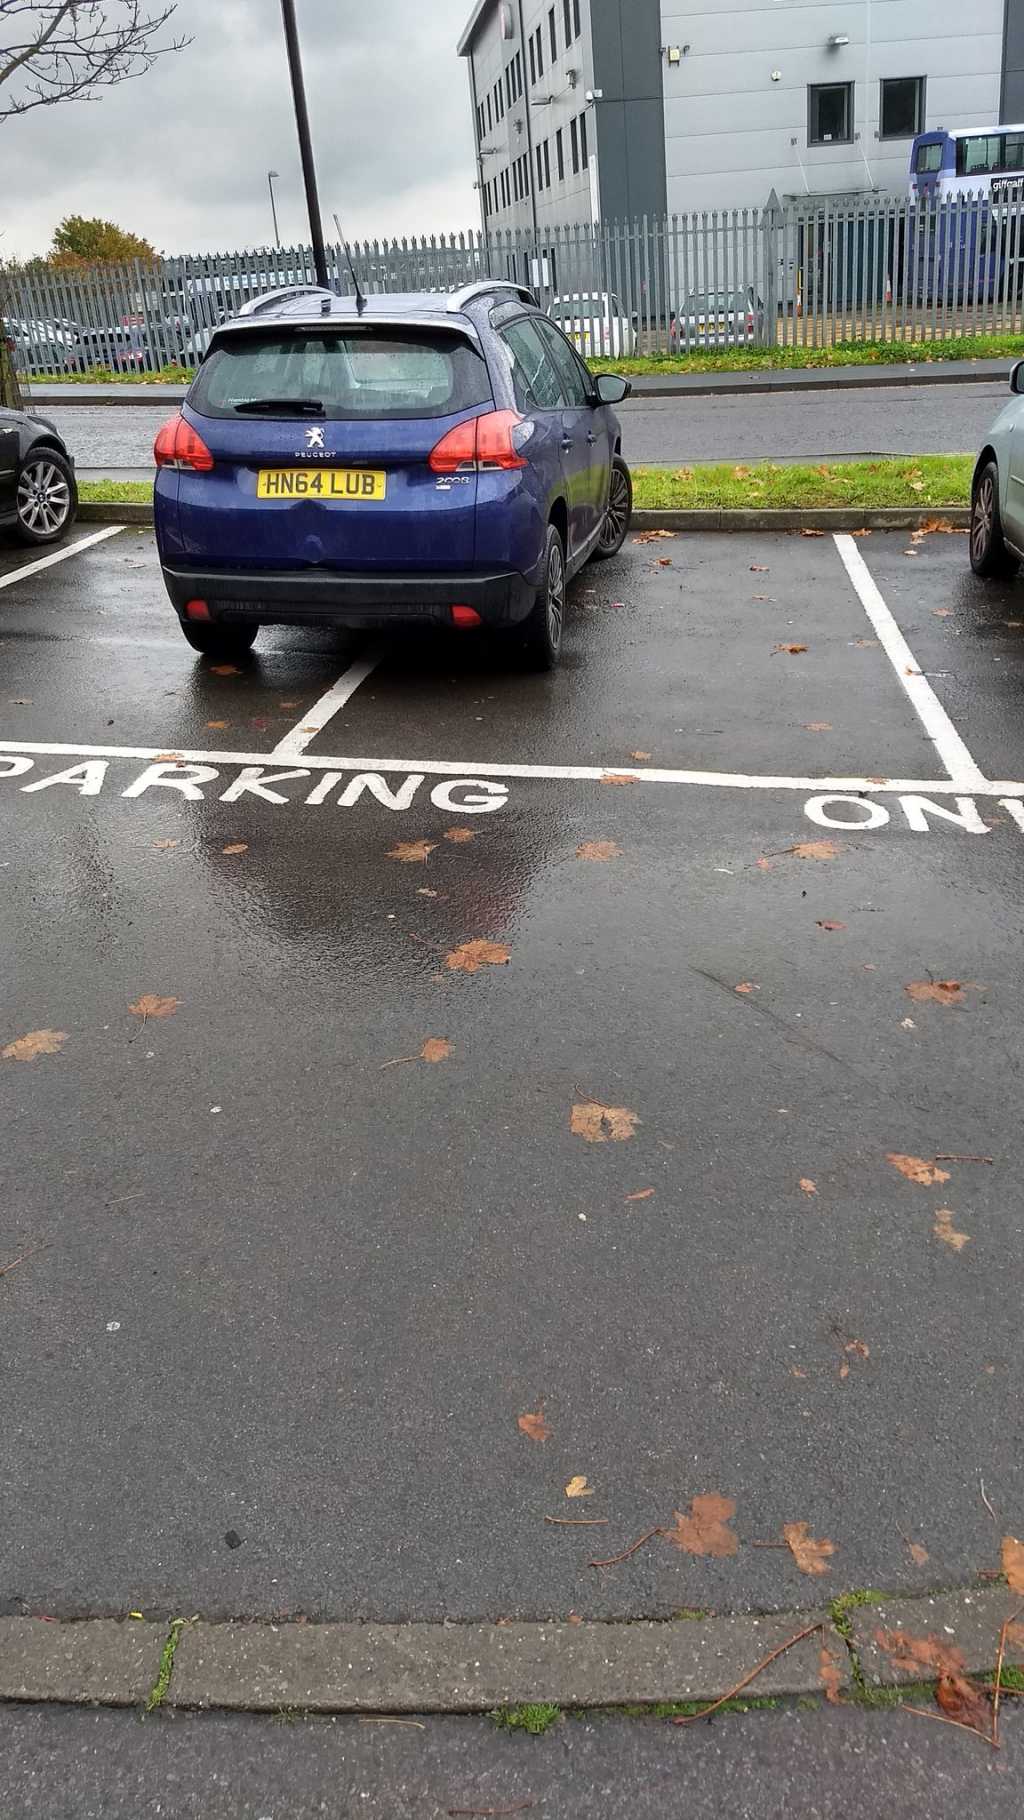 HN64 LUB displaying Selfish Parking